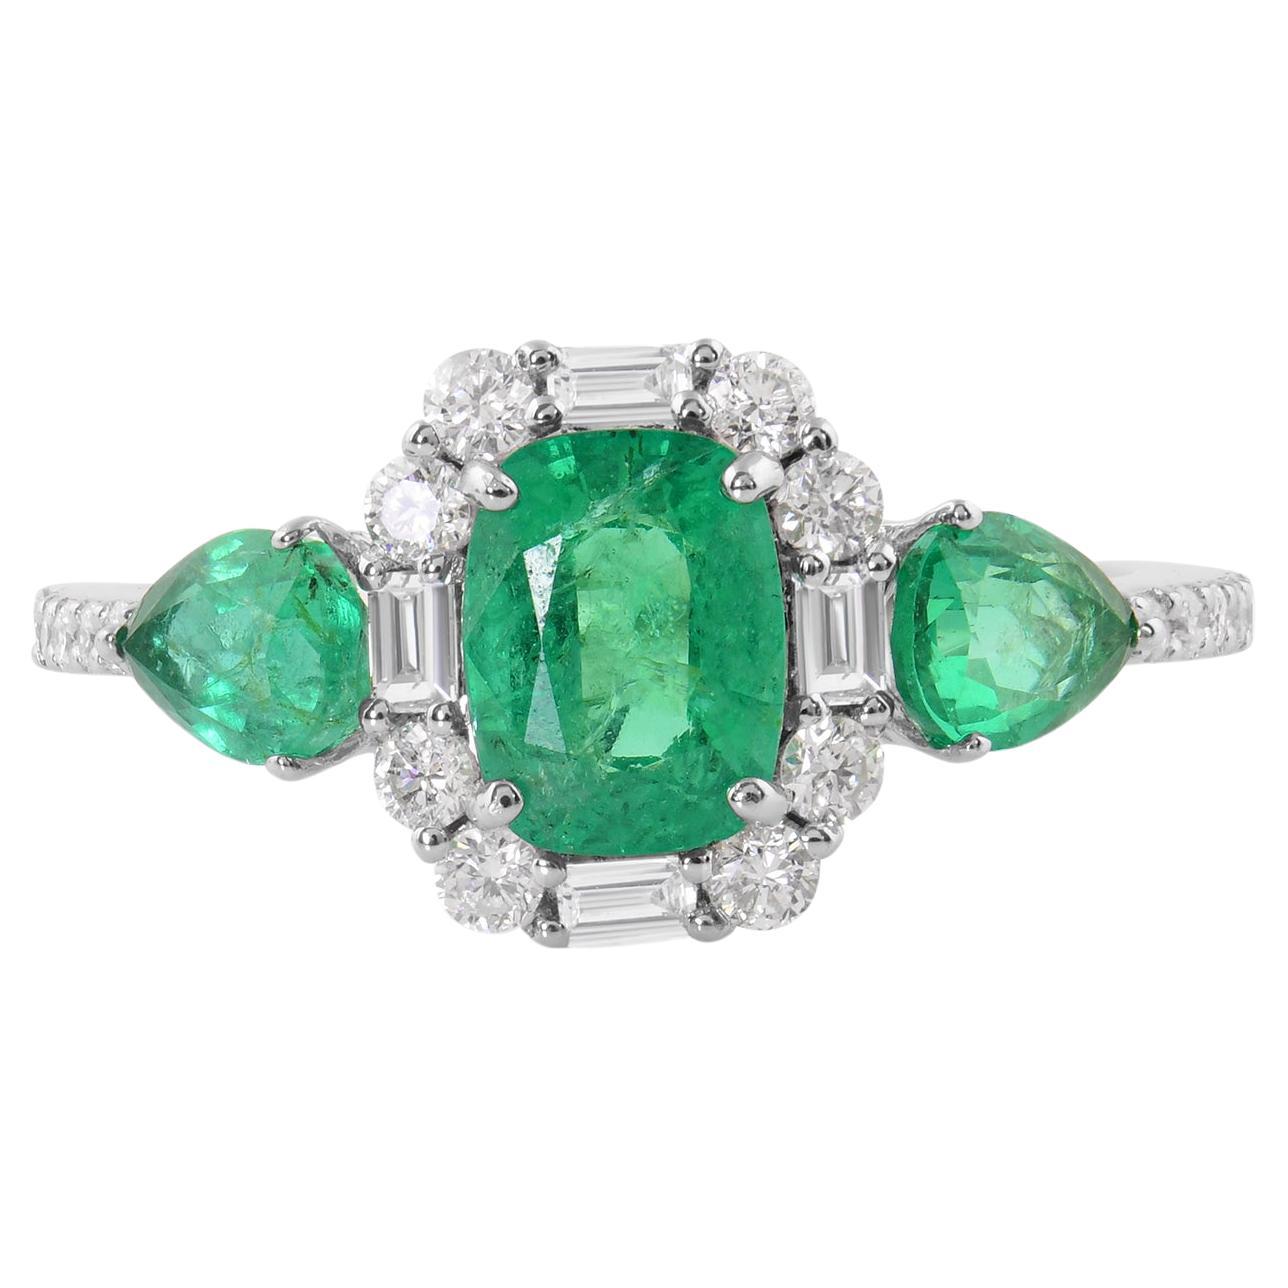 Zambian Emerald Gemstone Ring Diamond 18 Karat White Gold Handmade Jewelry